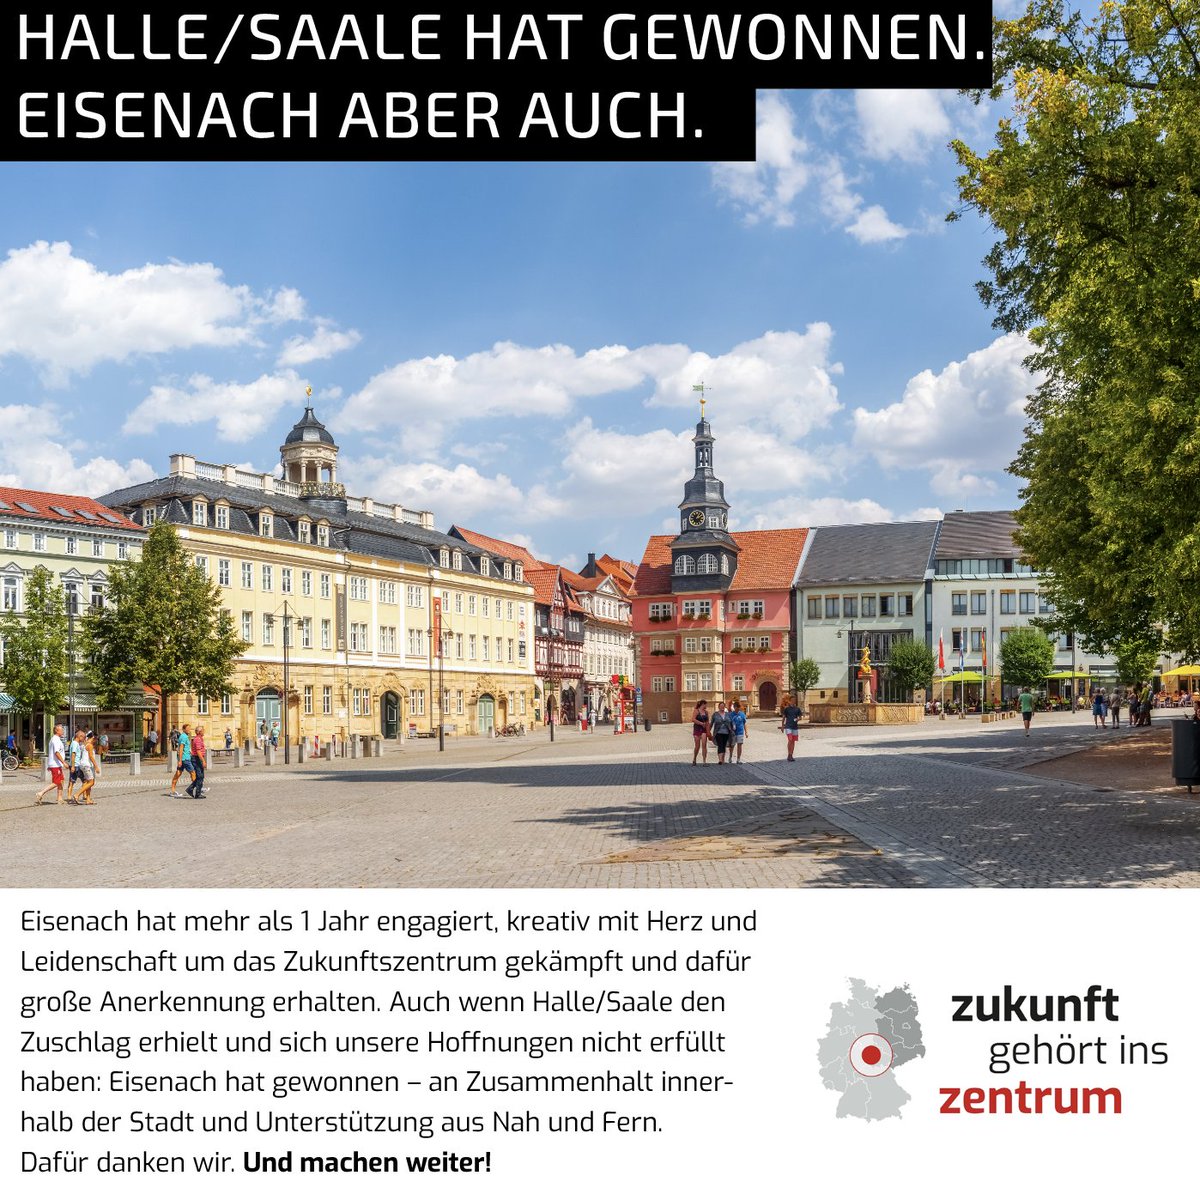 Wir gratulieren Halle für den Zuschlag für das geplante #Zukunftszentrum und danken allen, die sich mit Herzblut für #Eisenach engagiert haben.